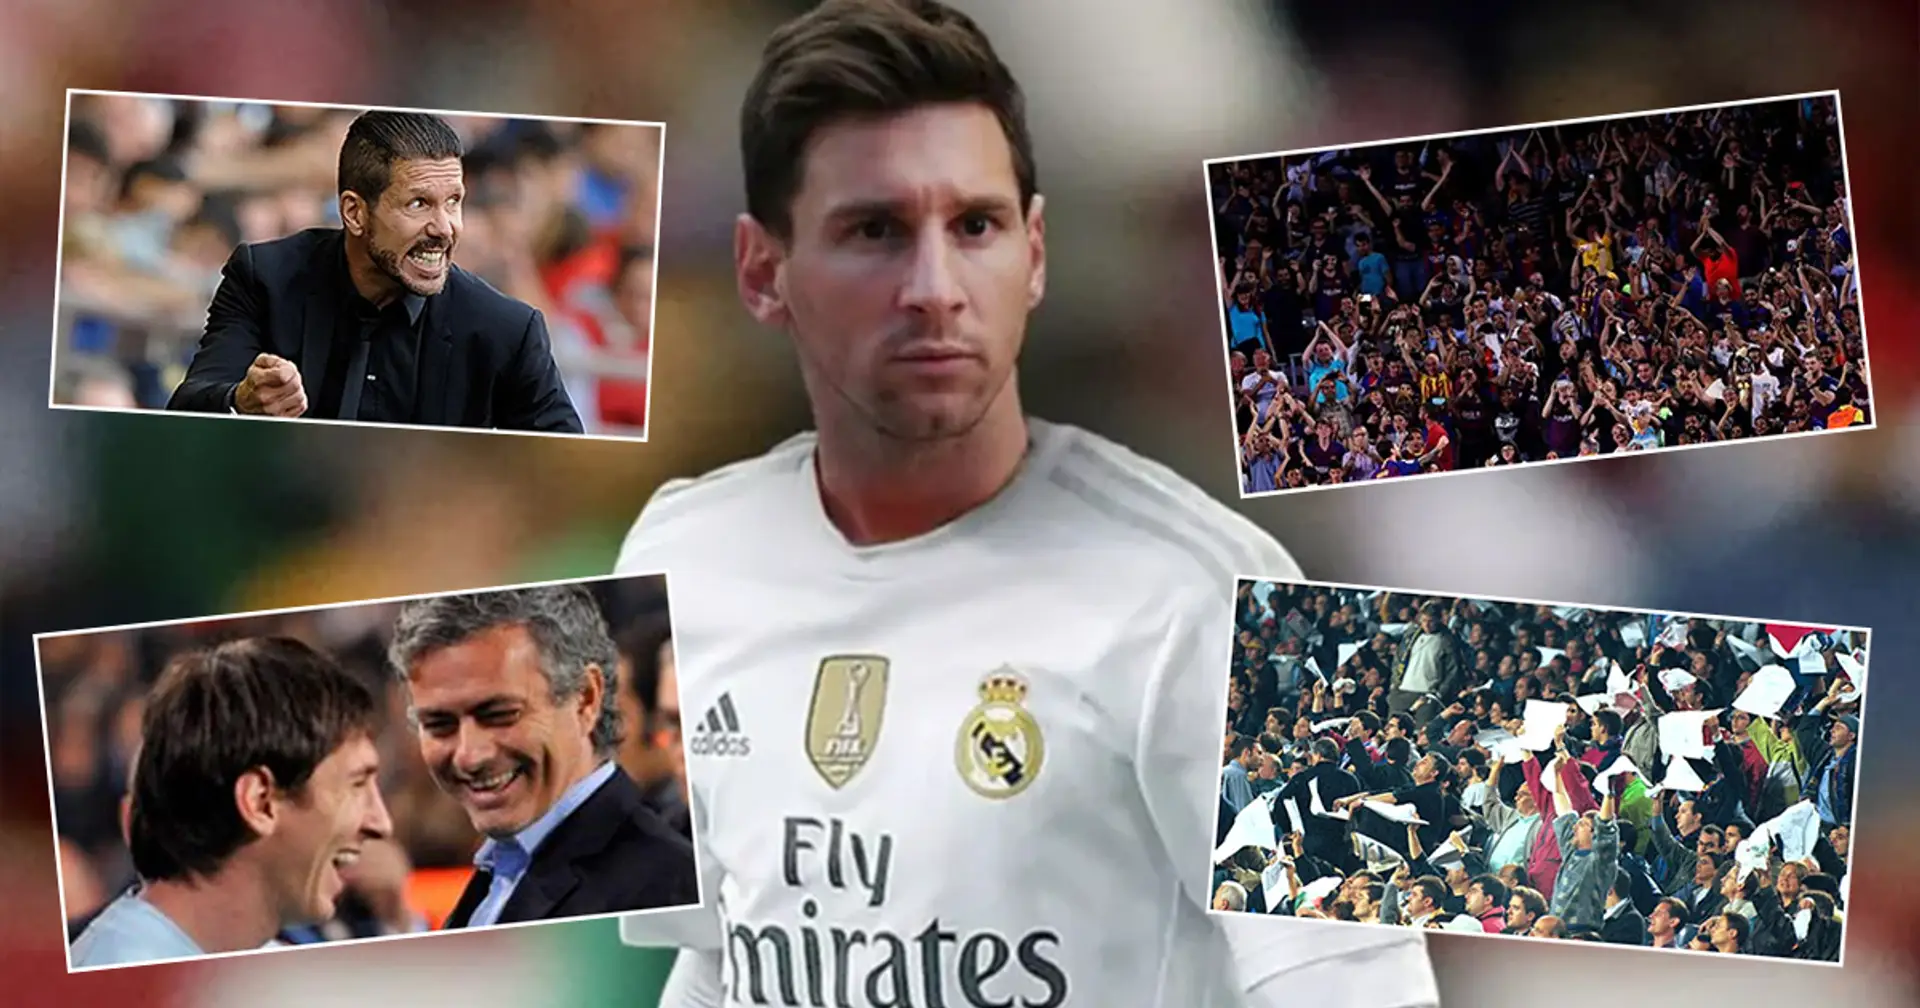 'Leo recibiría una ovación de pie en el Camp Nou y Simeone le odiaría': un fan explica lo que sucedería si Messi hubiese jugado en el Real Madrid